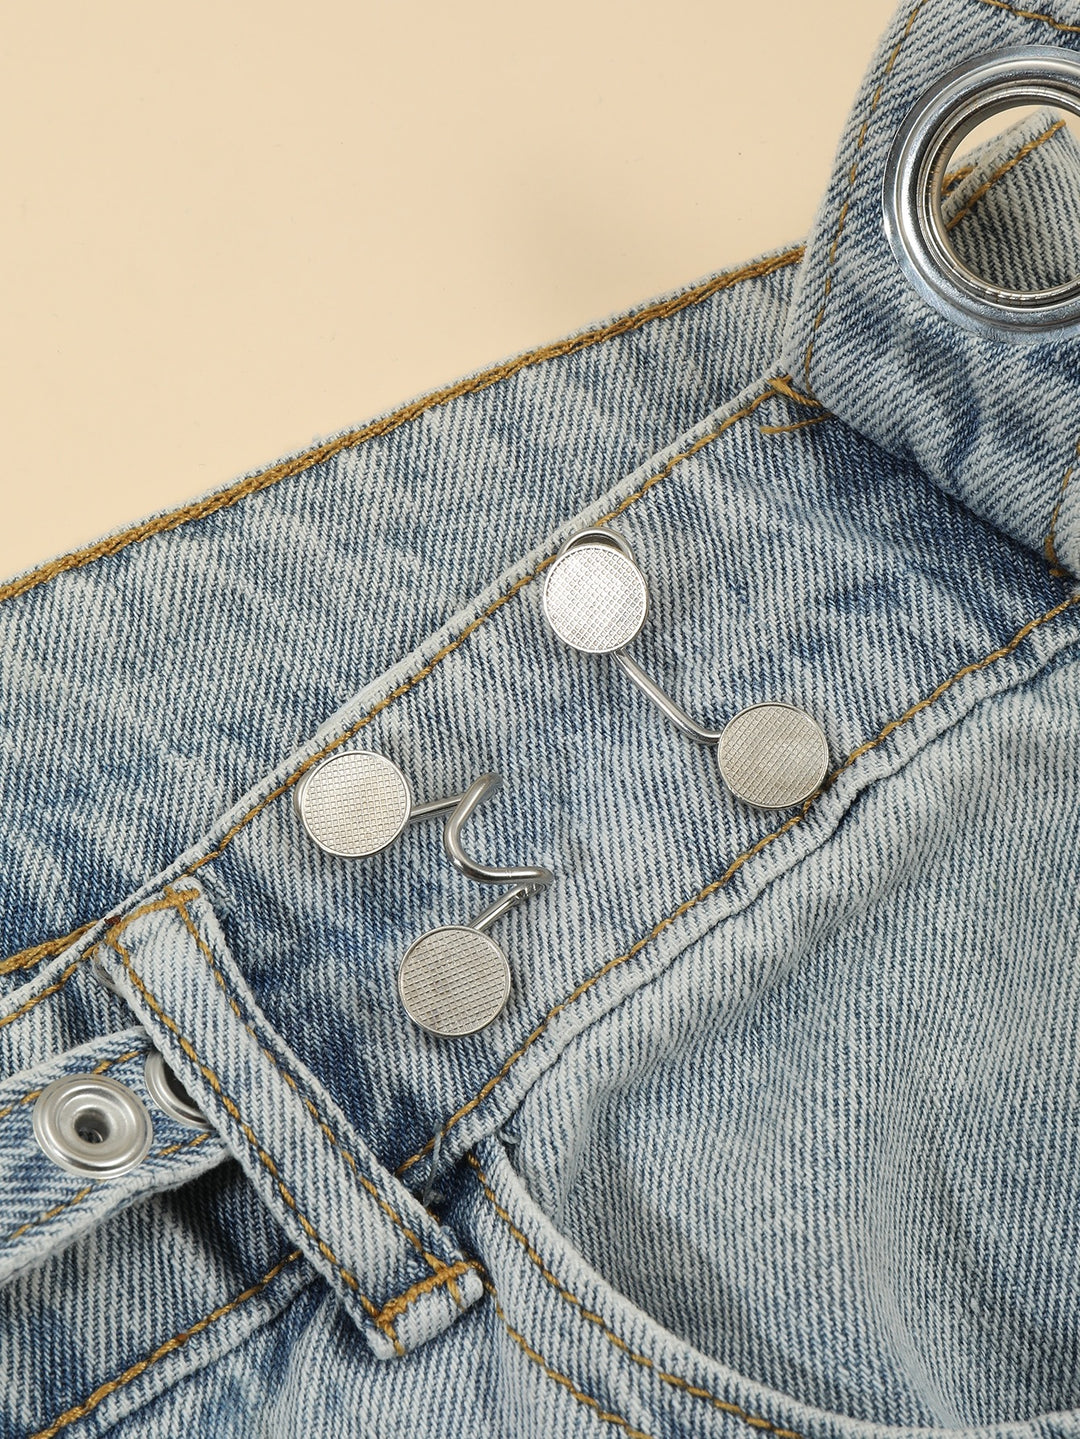 Adjustable Jeans Button Set